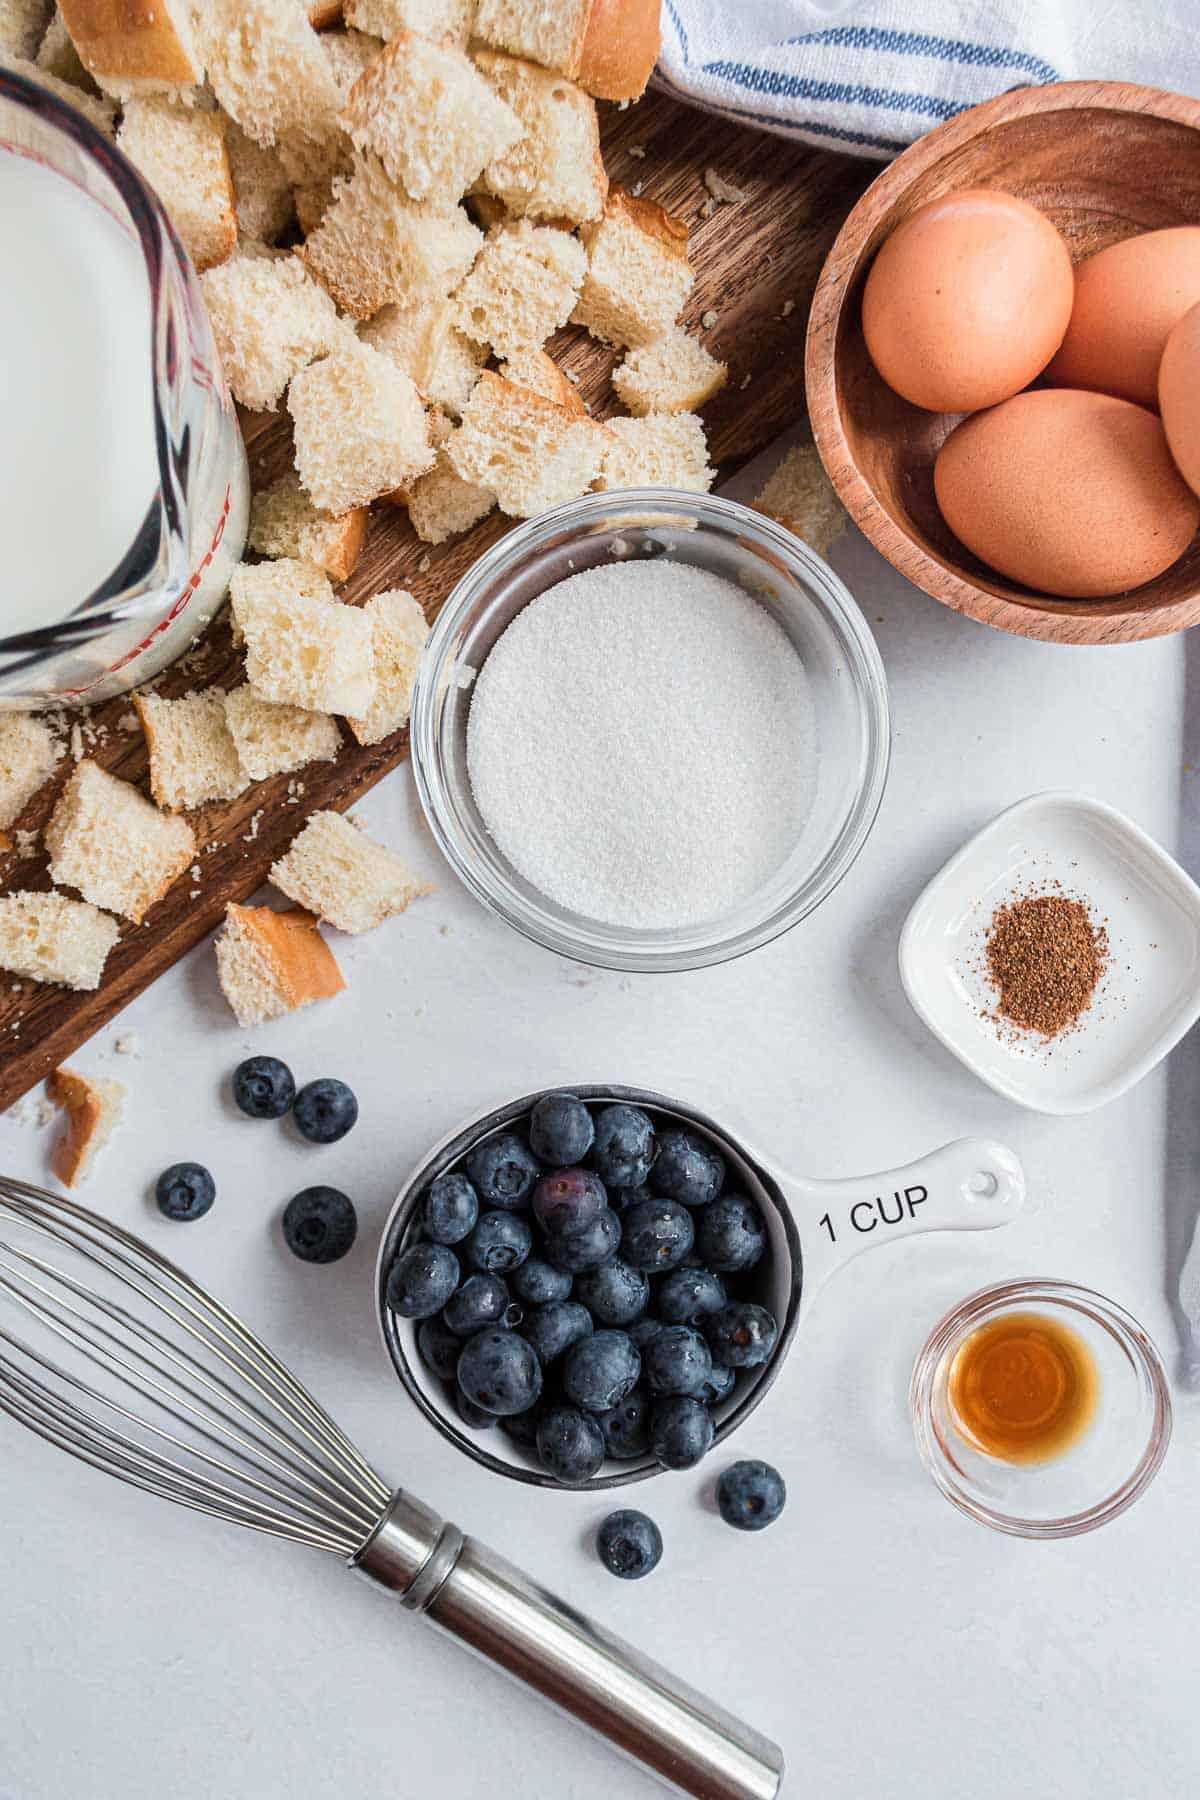 Overhead view of ingredients: cinnamon, cubed bread, milk, eggs, blueberries.